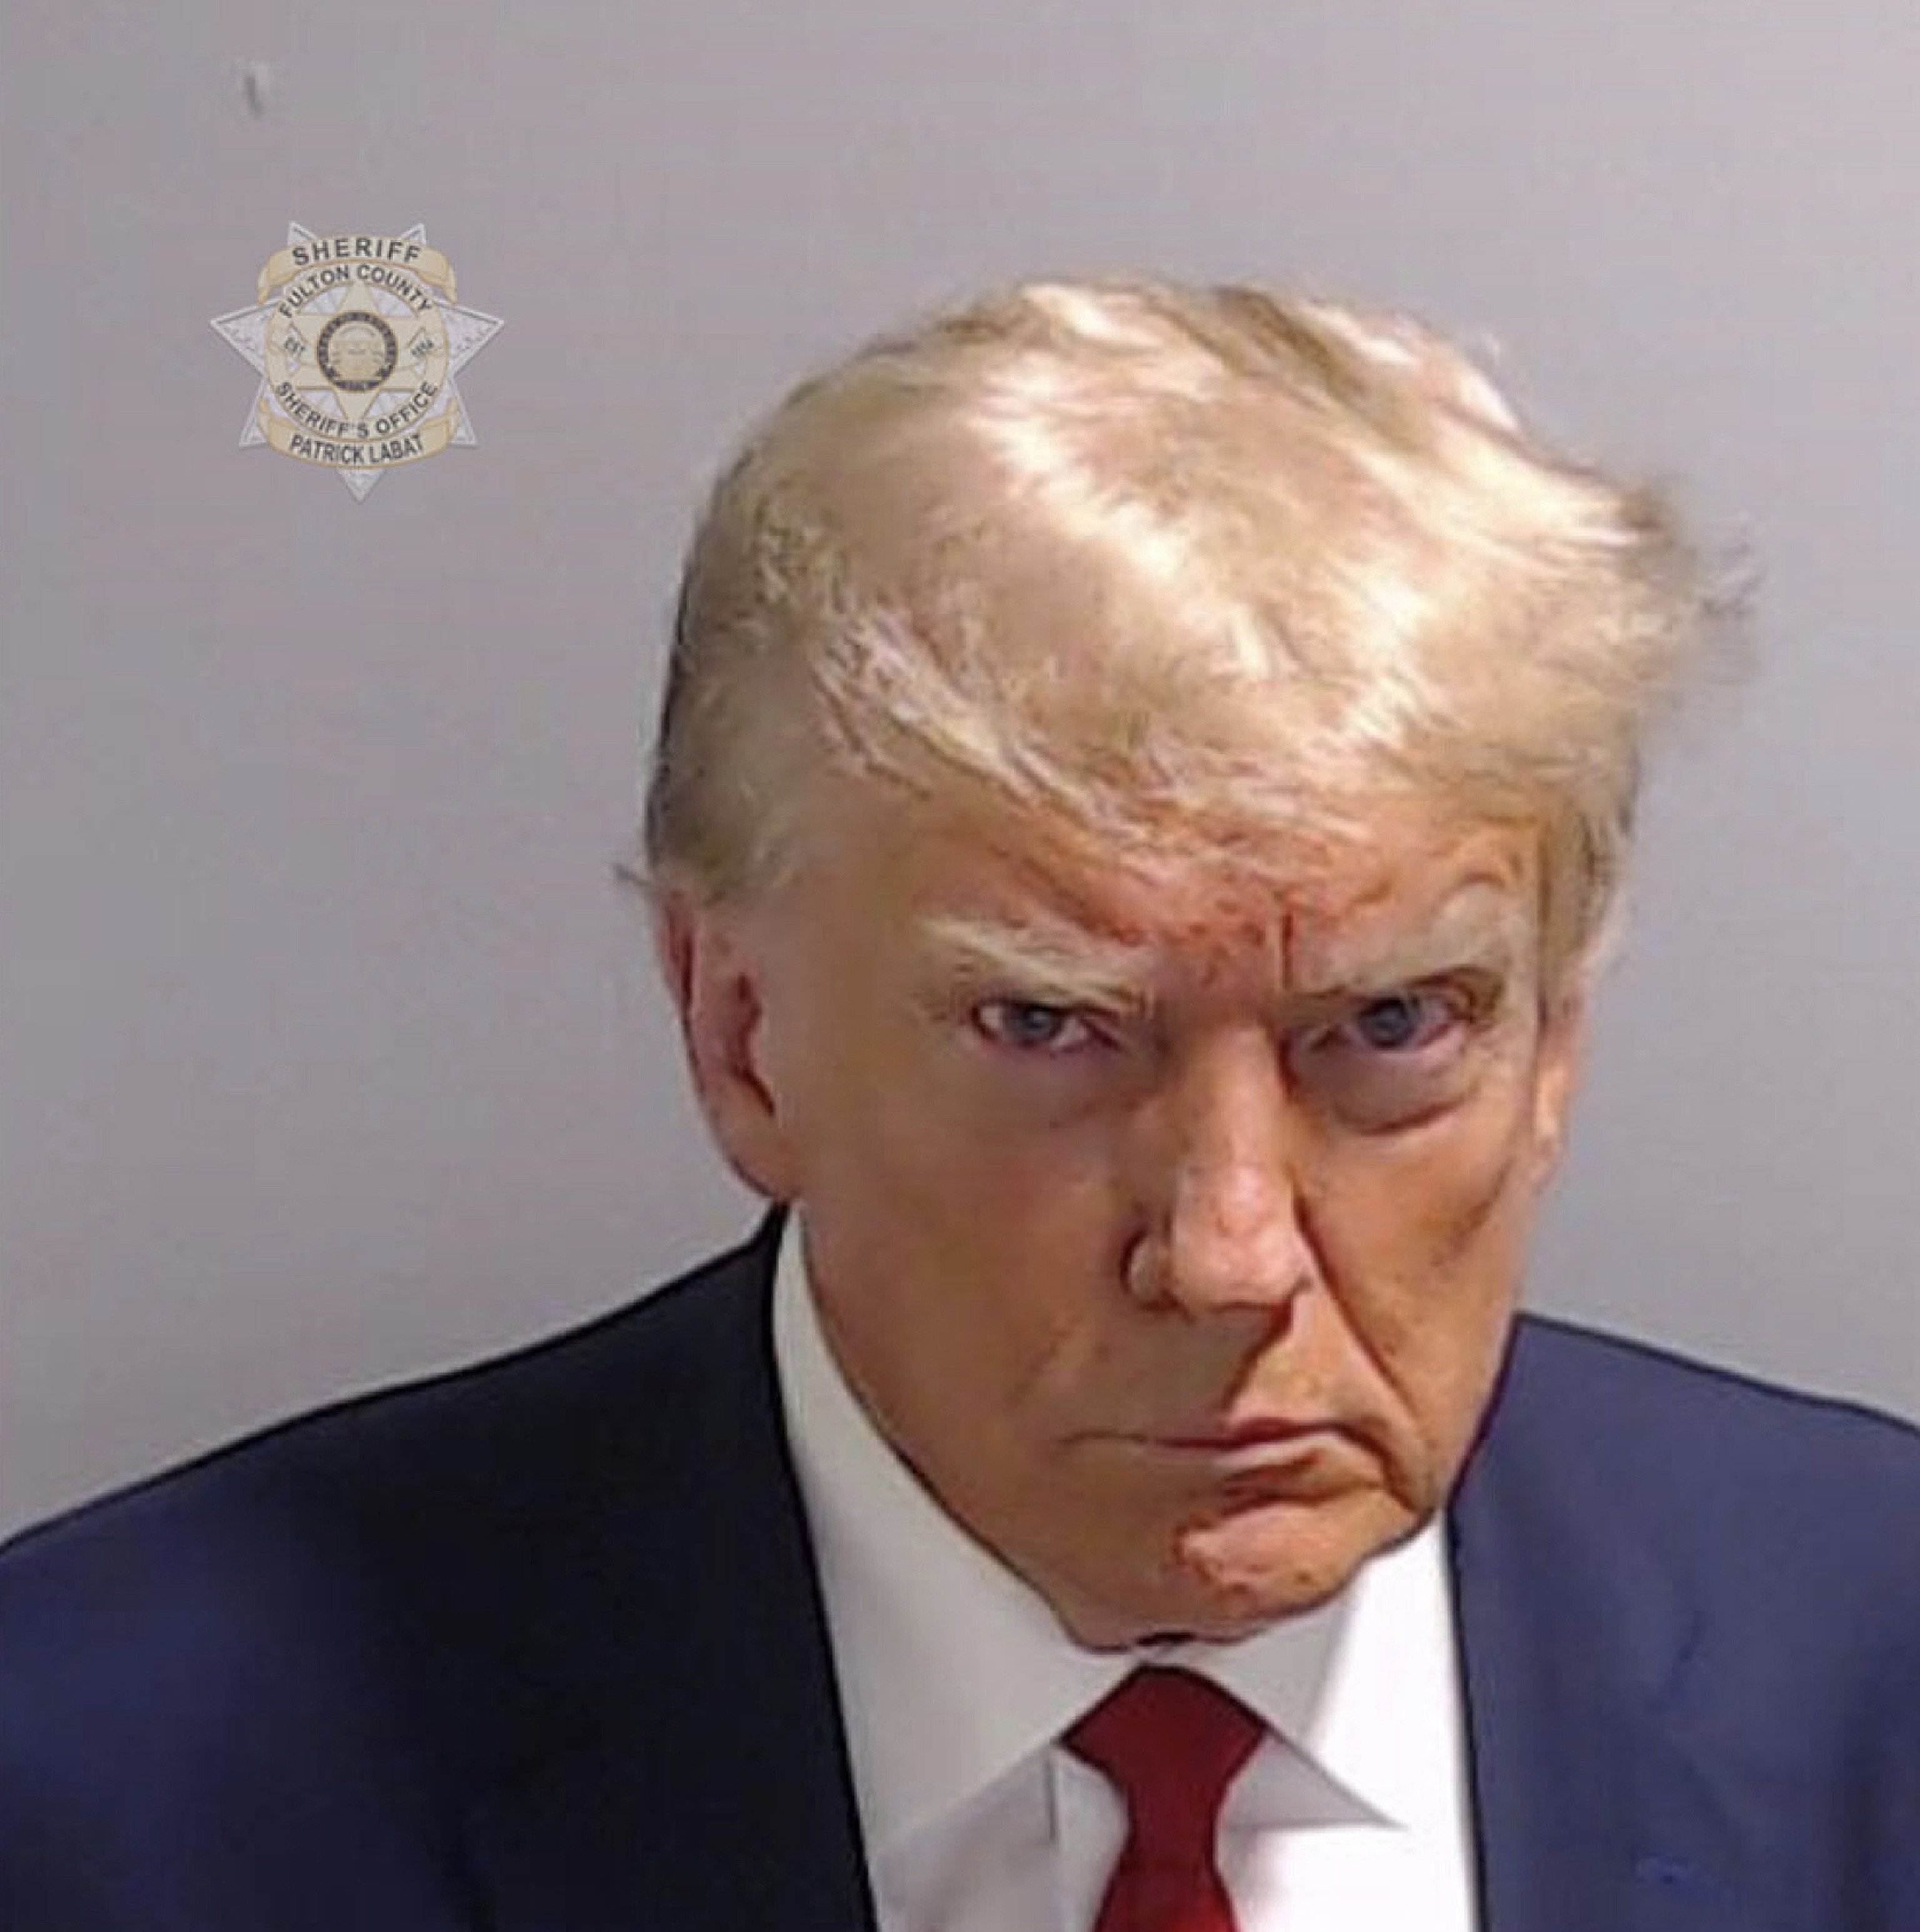 Trump gana 7 millones de dólares haciendo merchandising con su fotografía policial